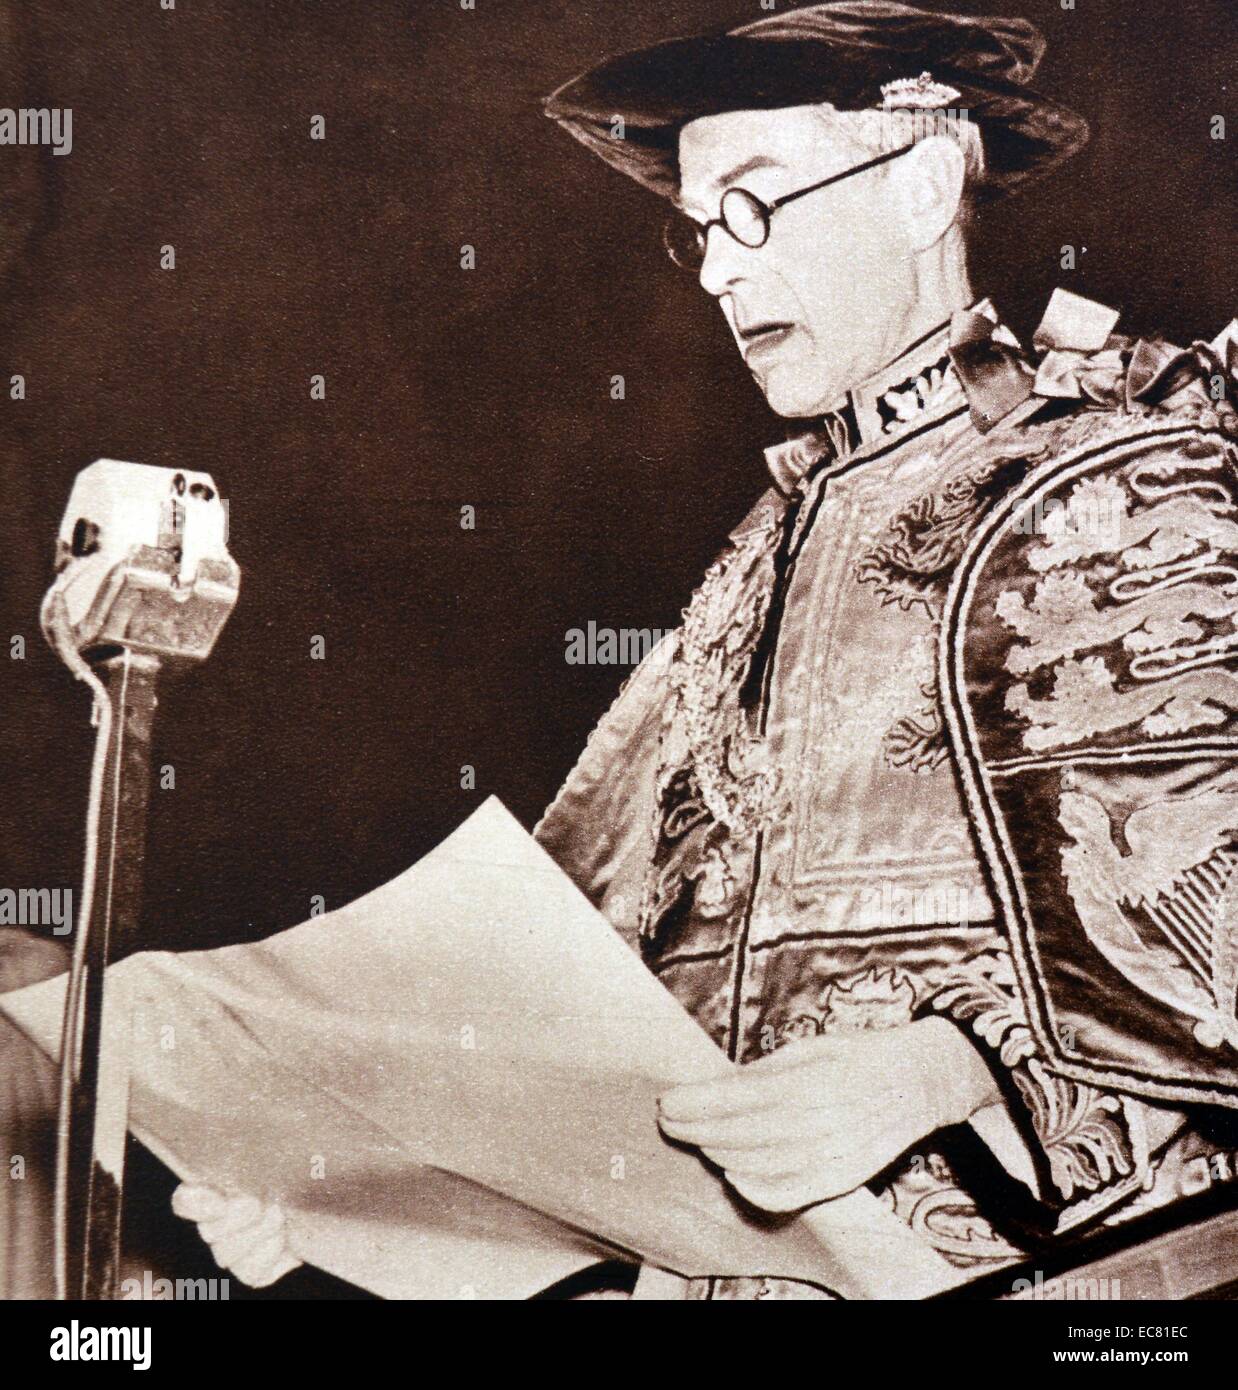 Die offizielle Ankündigung der Thronbesteigung von König George VI. auf den Thron des Vereinigten Königreichs nach der Abdankung seines Bruders König Edward VIII. Stockfoto